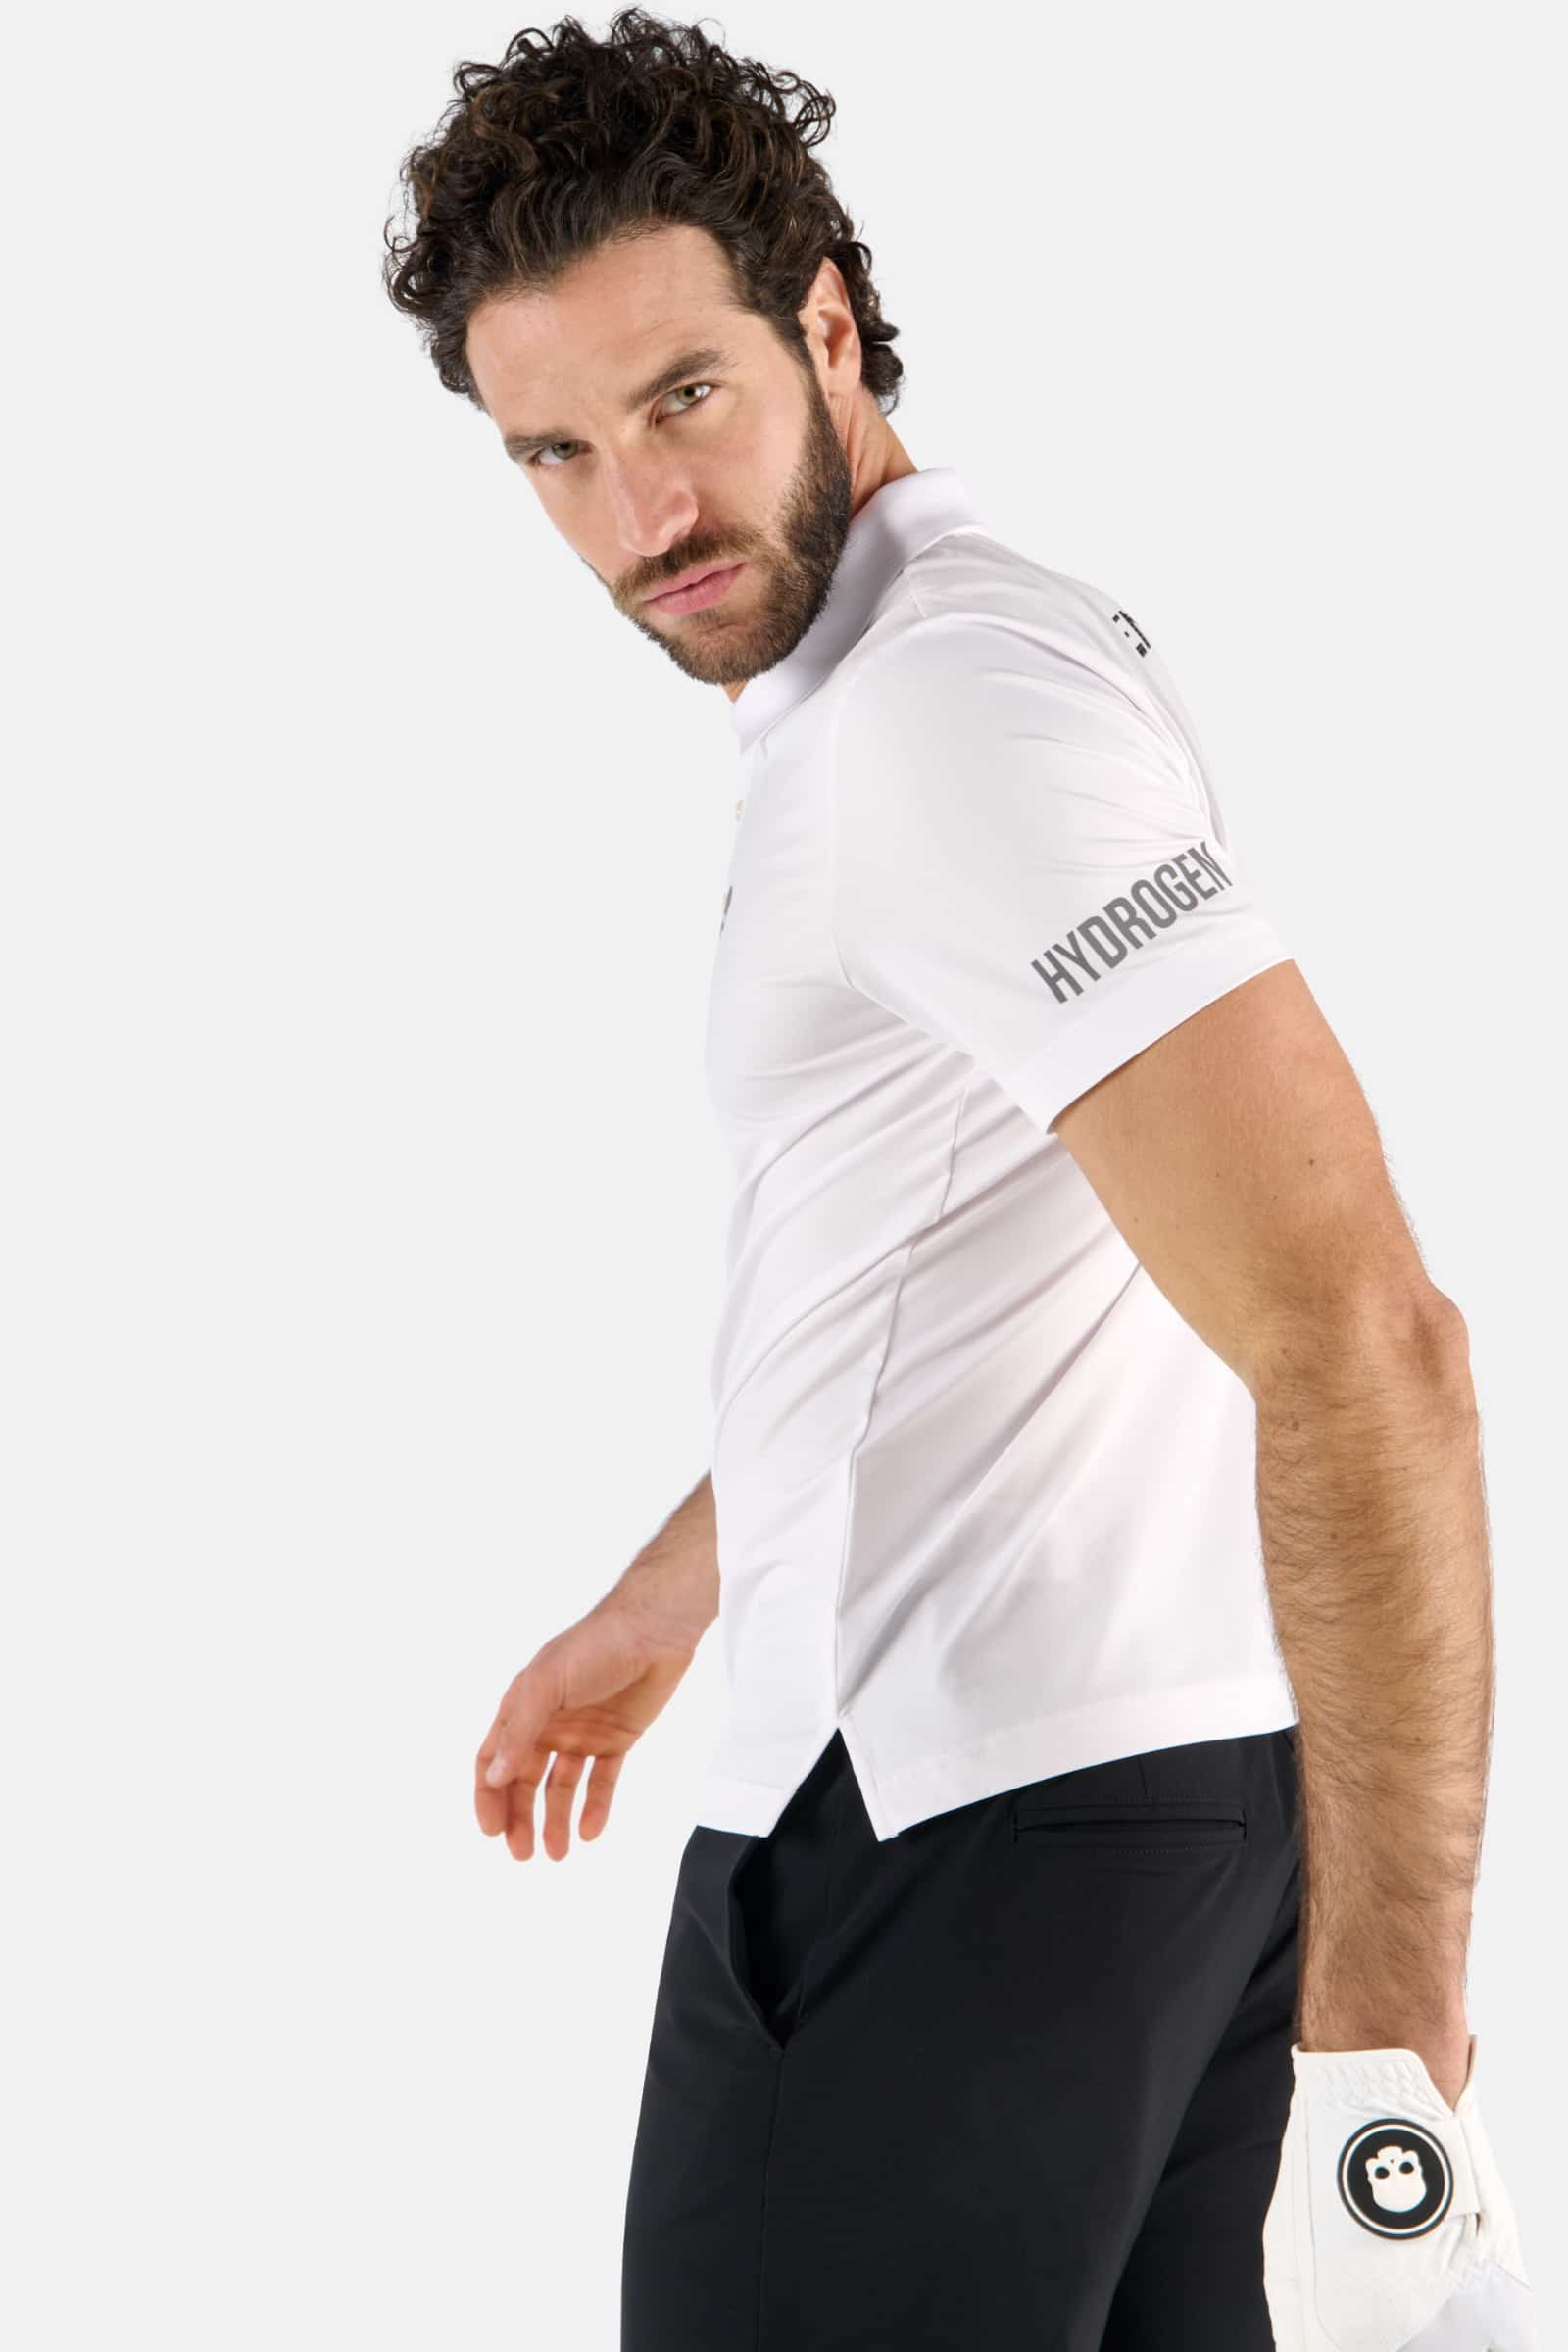 POLO FIT COMFORT CON STAMPA OVER GAME - WHITE - Abbigliamento sportivo | Hydrogen